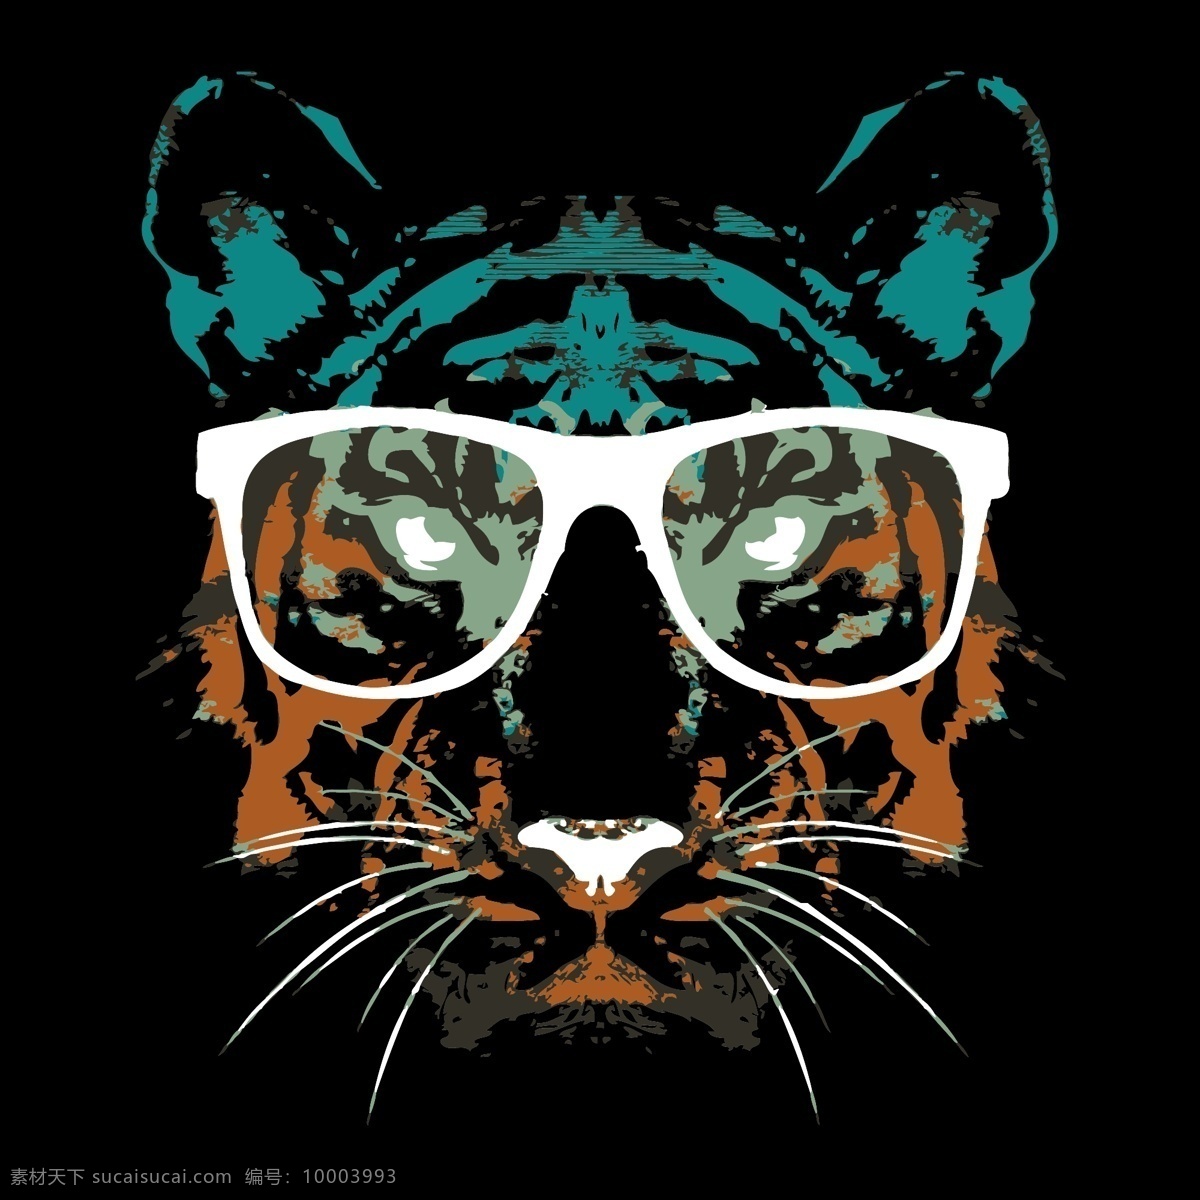 老虎 猫 几何 彩色 手绘 水彩 插画 壁纸 定位 眼镜 酷炫 服装 浴帘